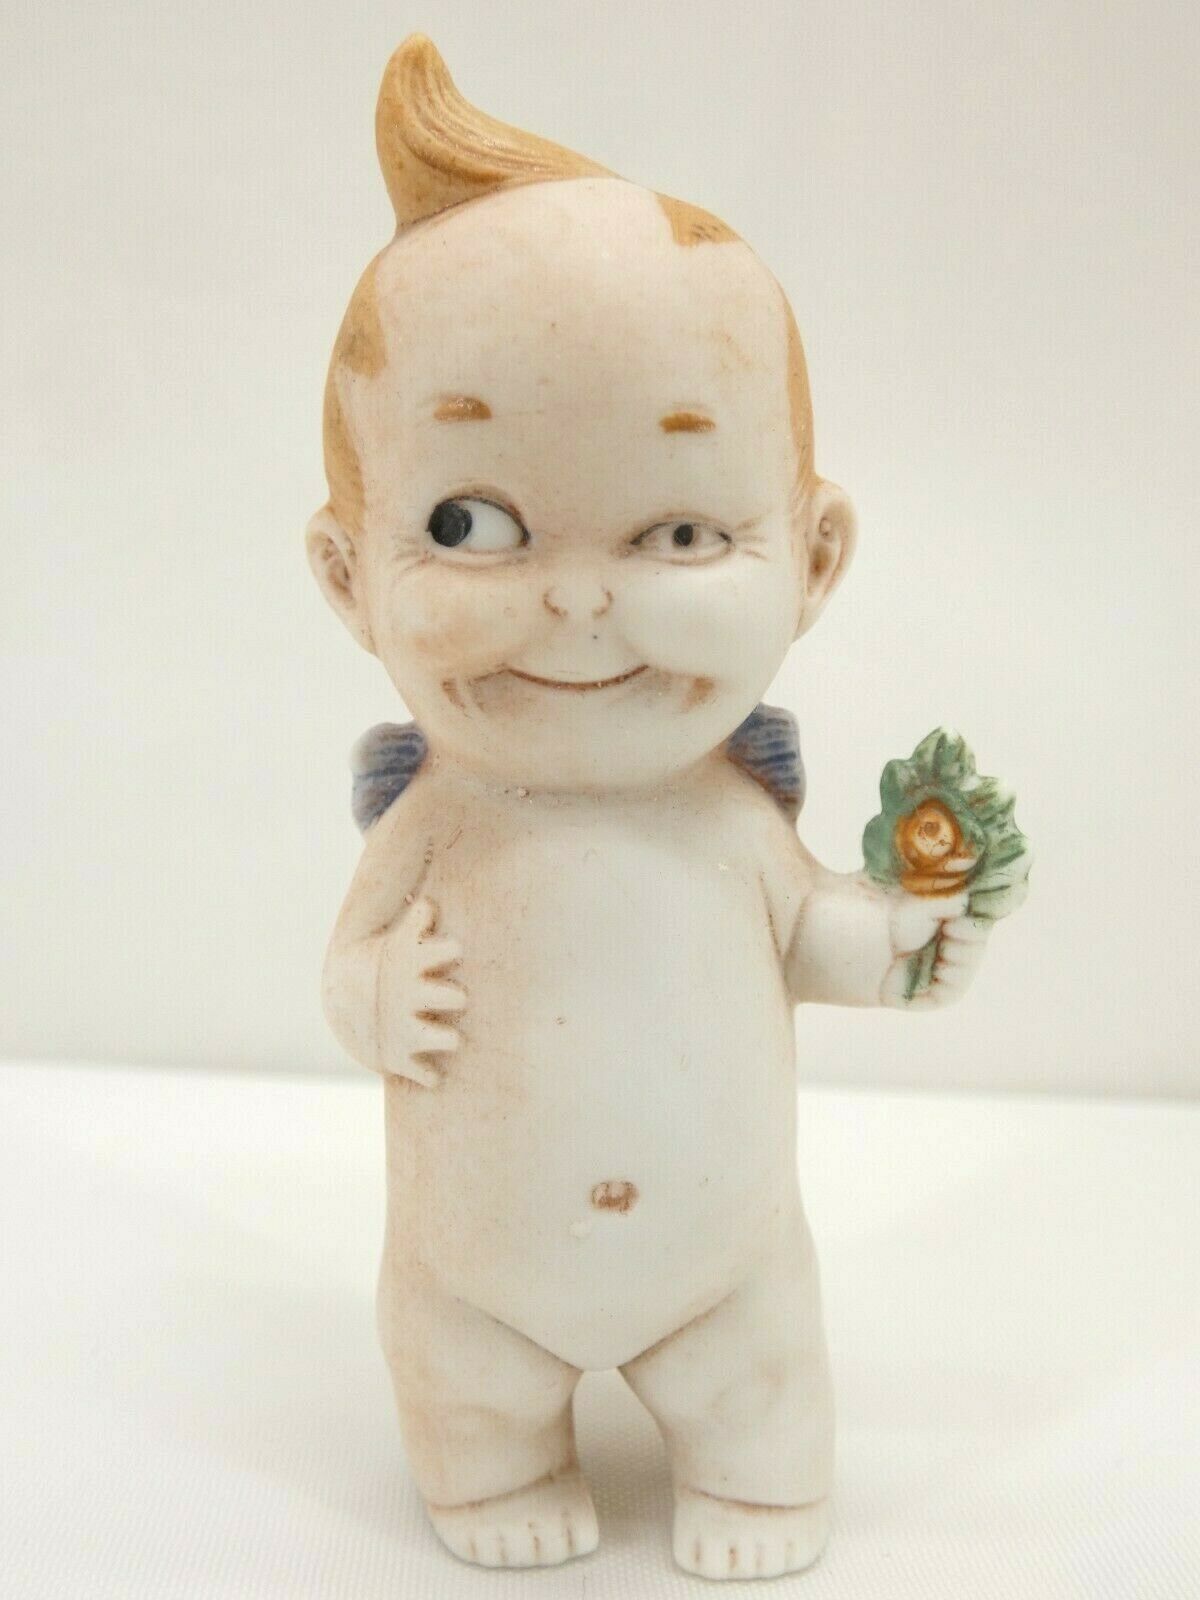 #15/1 German Bisque Kewpie-like Doll Figurine W/ Rose Schafer Vater (?)